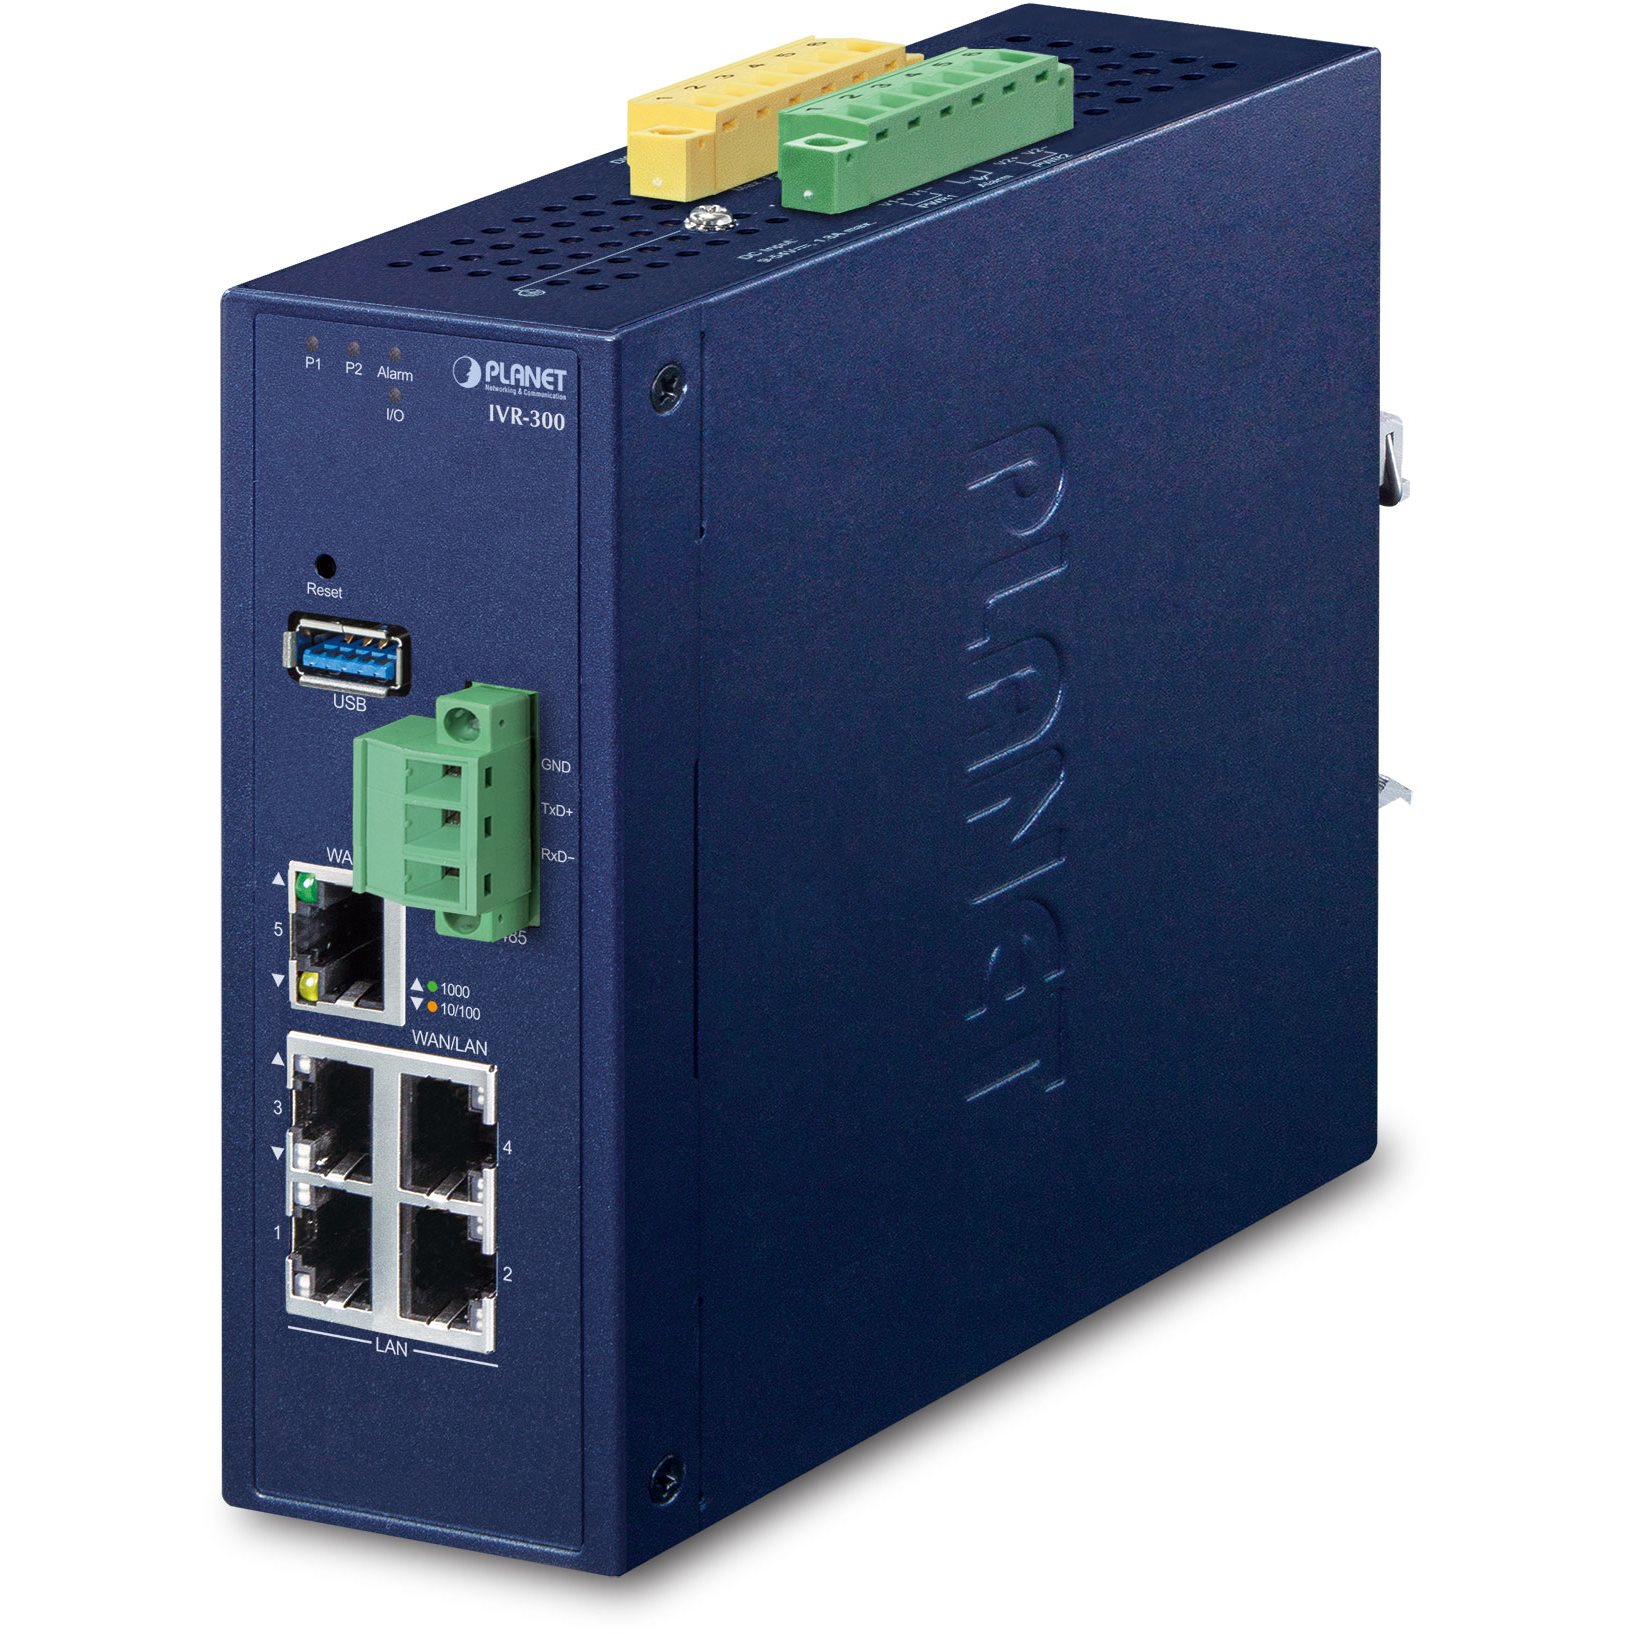  Routeurs Pro Routeur indus VPN 5 ports Giga -40/75°C IVR-300